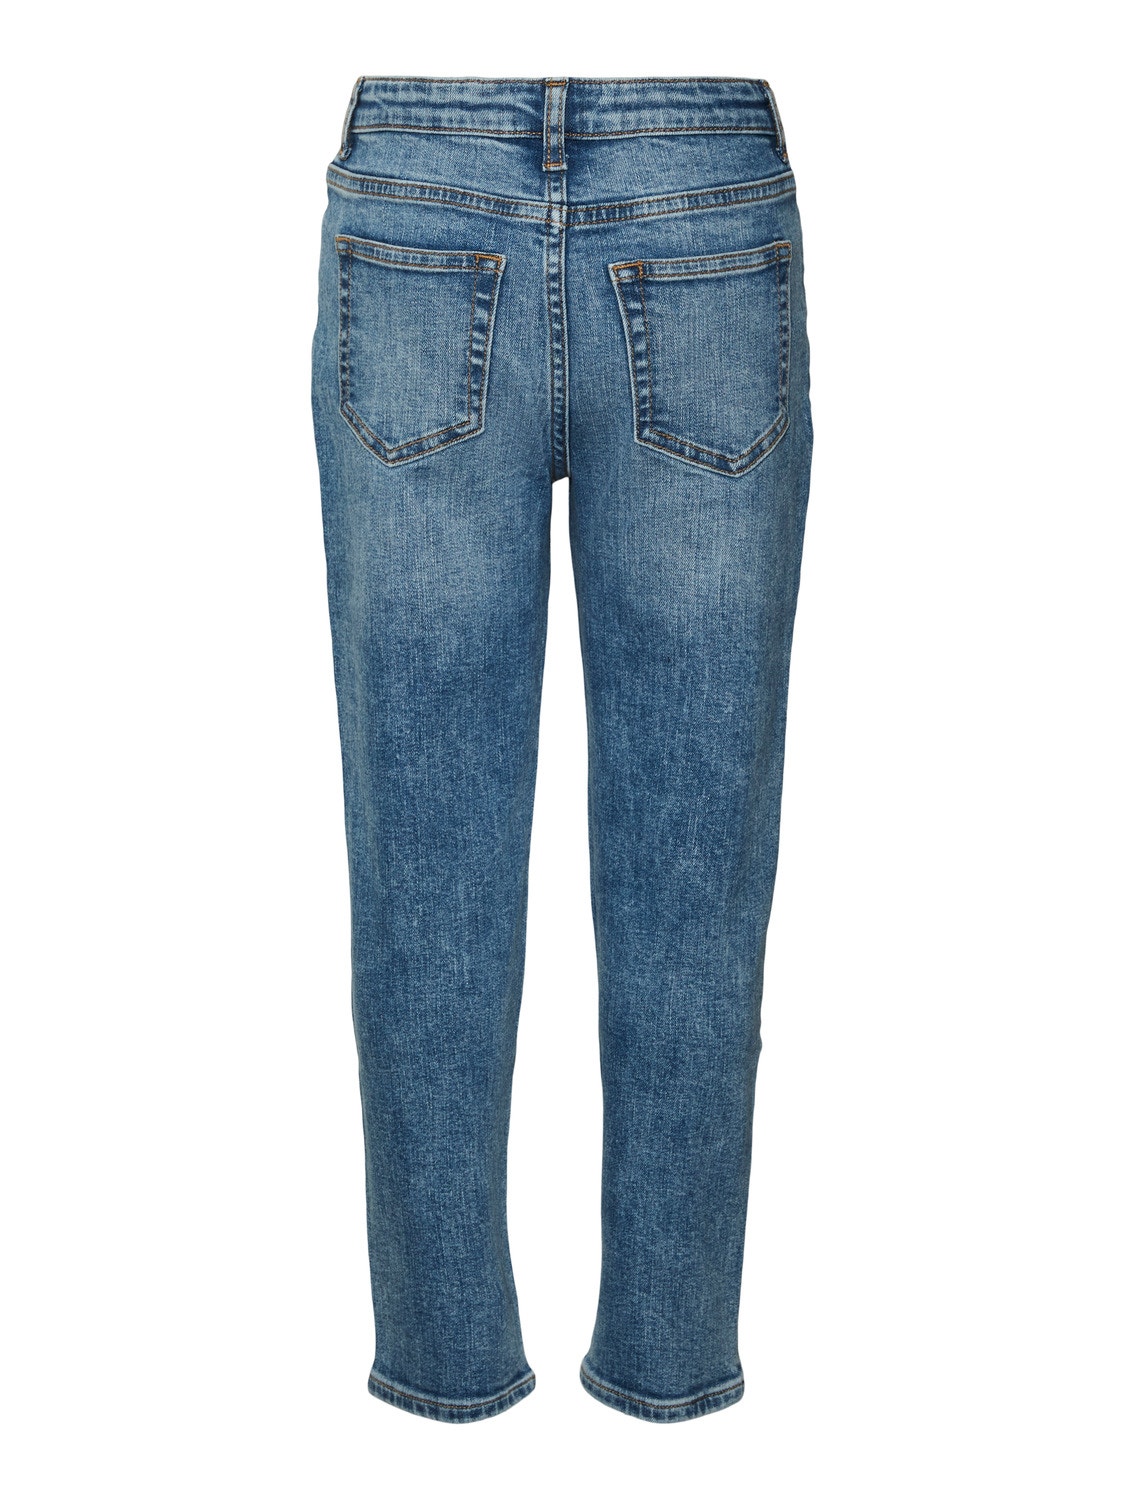 Vero Moda VMOLIVIA Mom Fit Jeans -Medium Blue Denim - 10297692